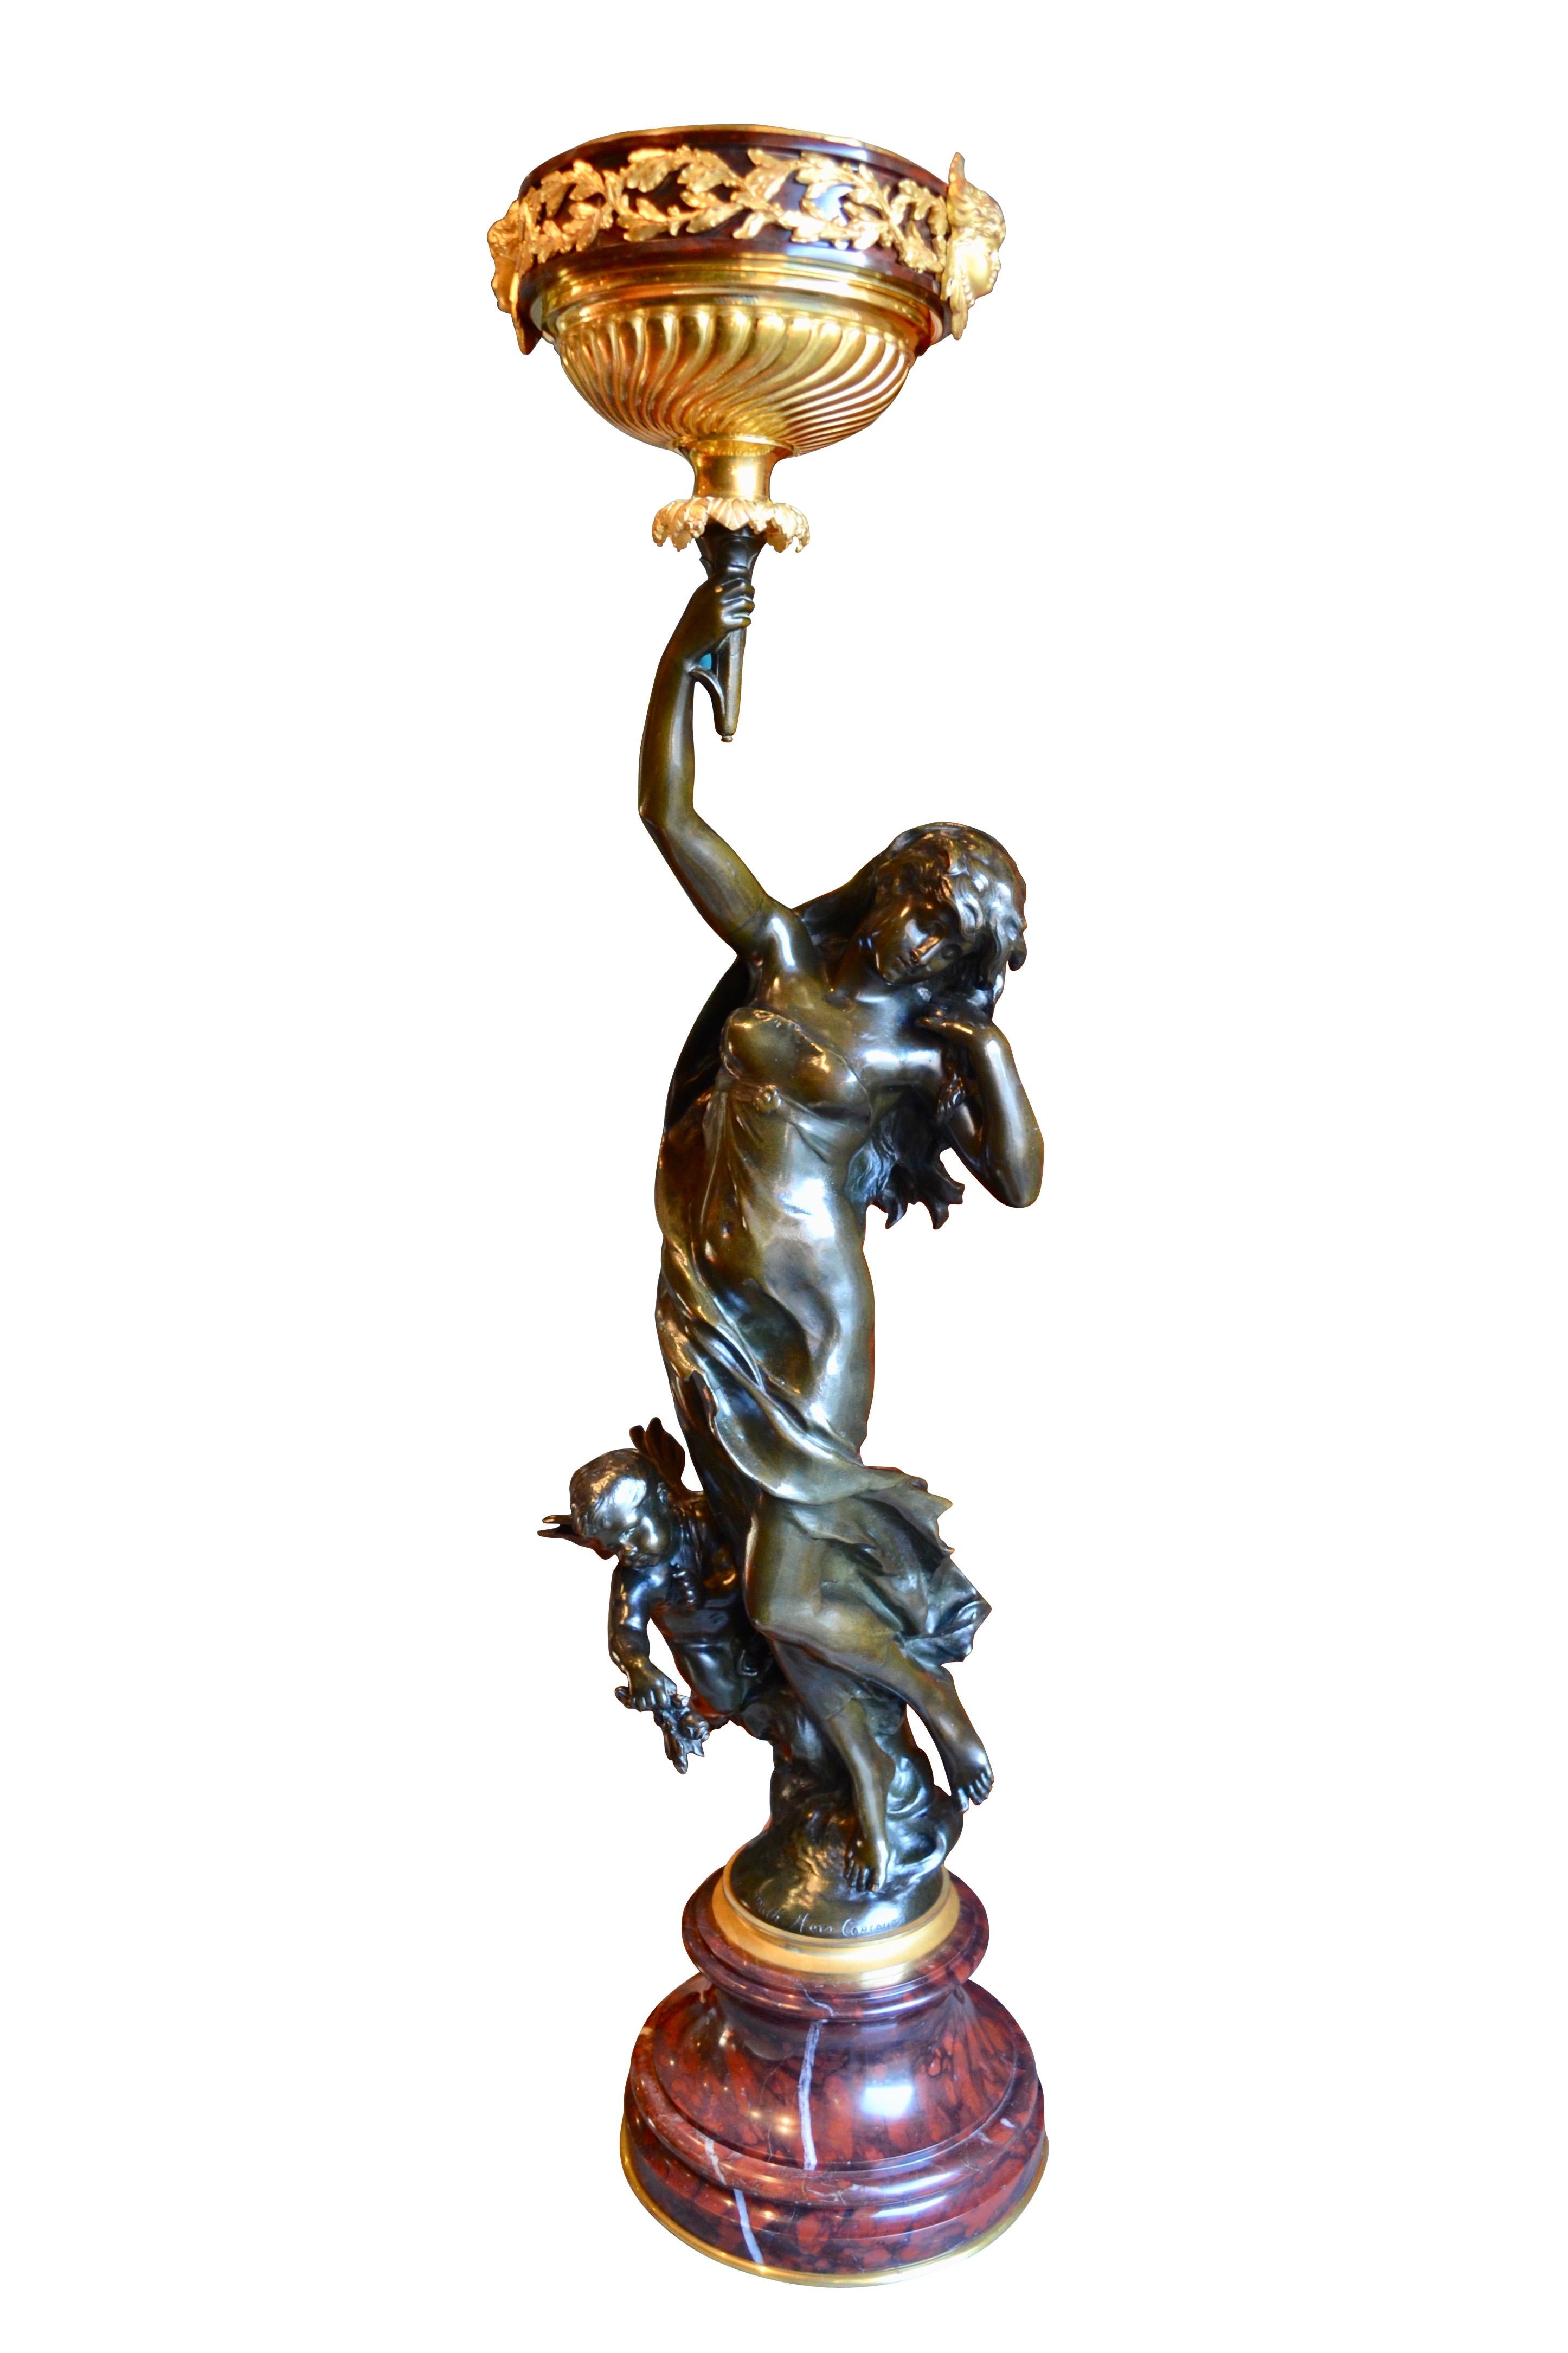 Une rareté  Statue en bronze d'une nymphe et d'un putto agrippé par un célèbre sculpteur français du 19ème siècle  Mathurin Moreau qui a été transformé sur mesure en lampe à huile. La nymphe tient un flambeau en l'air  qui faisait partie du bronze